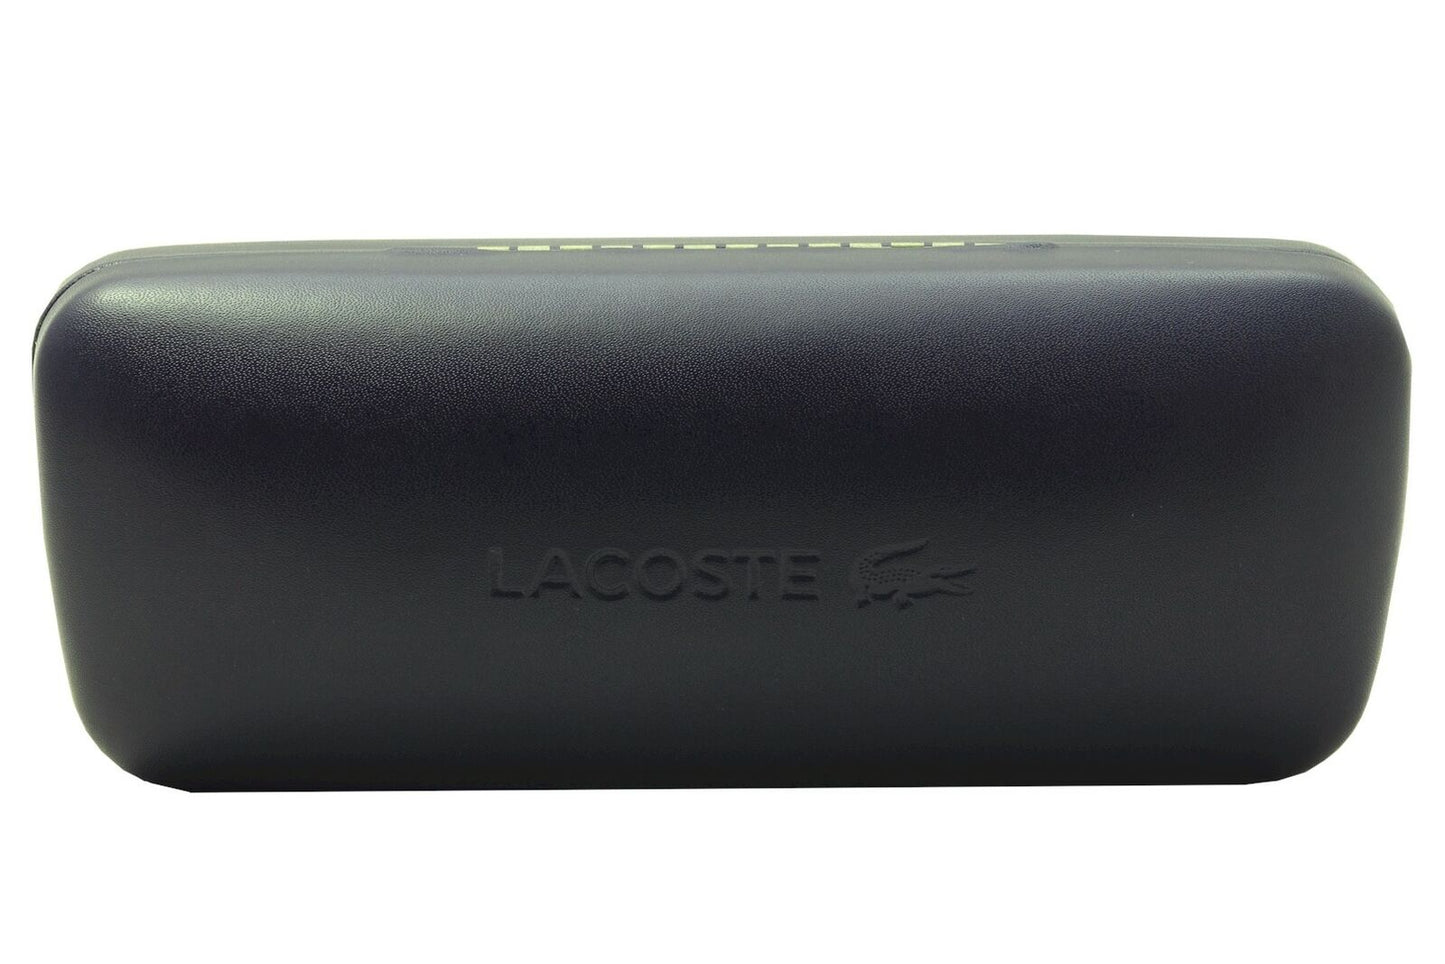 Lacoste L789S-214-53  New Sunglasses